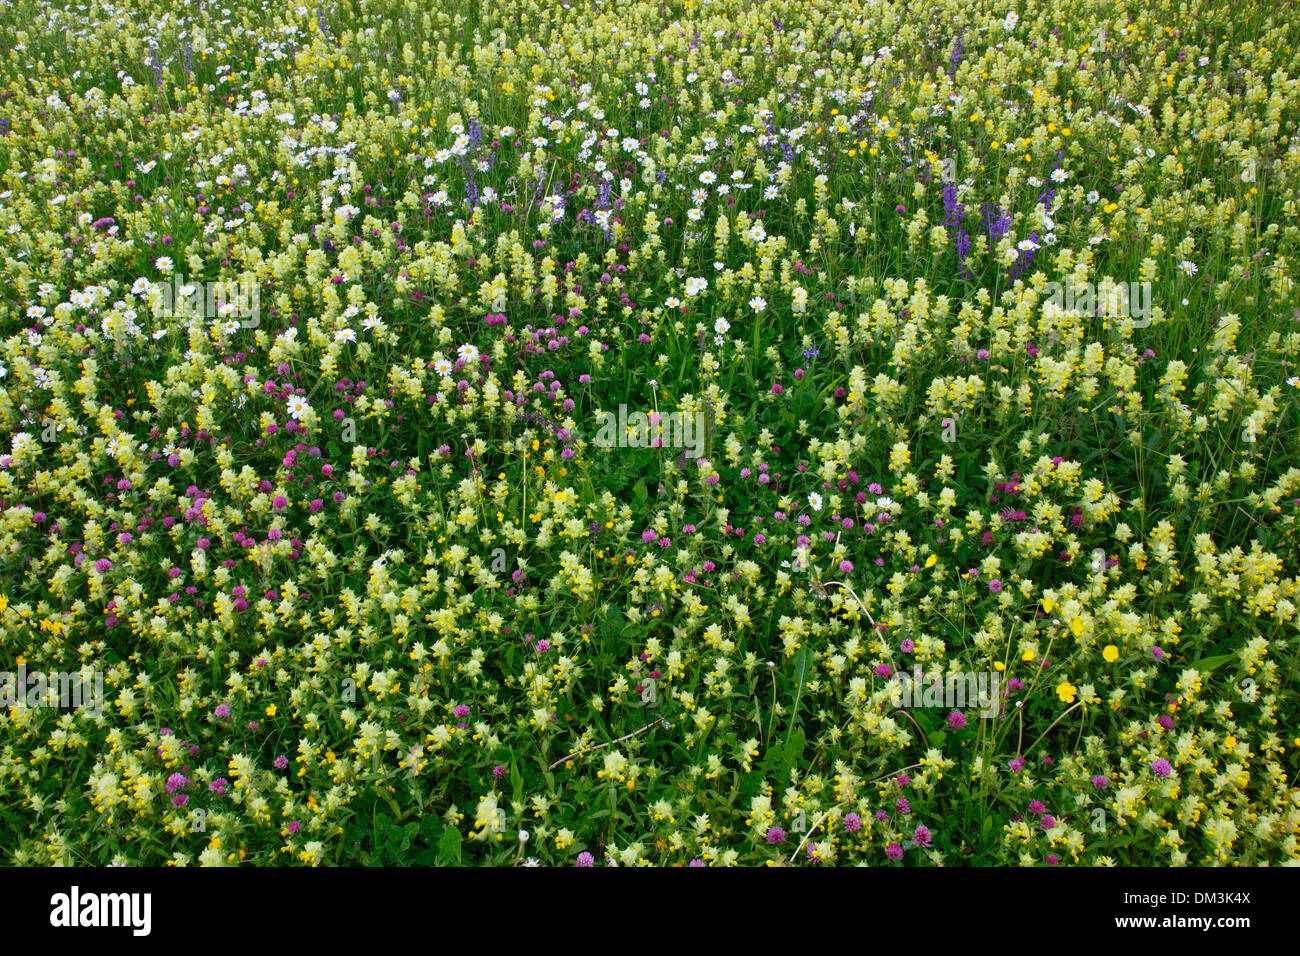 Fiore fiori Flower meadow plain molla pascolo di sfondo a bassa fertilità pattern di massa prato estivo abstract blossom luminose Foto Stock